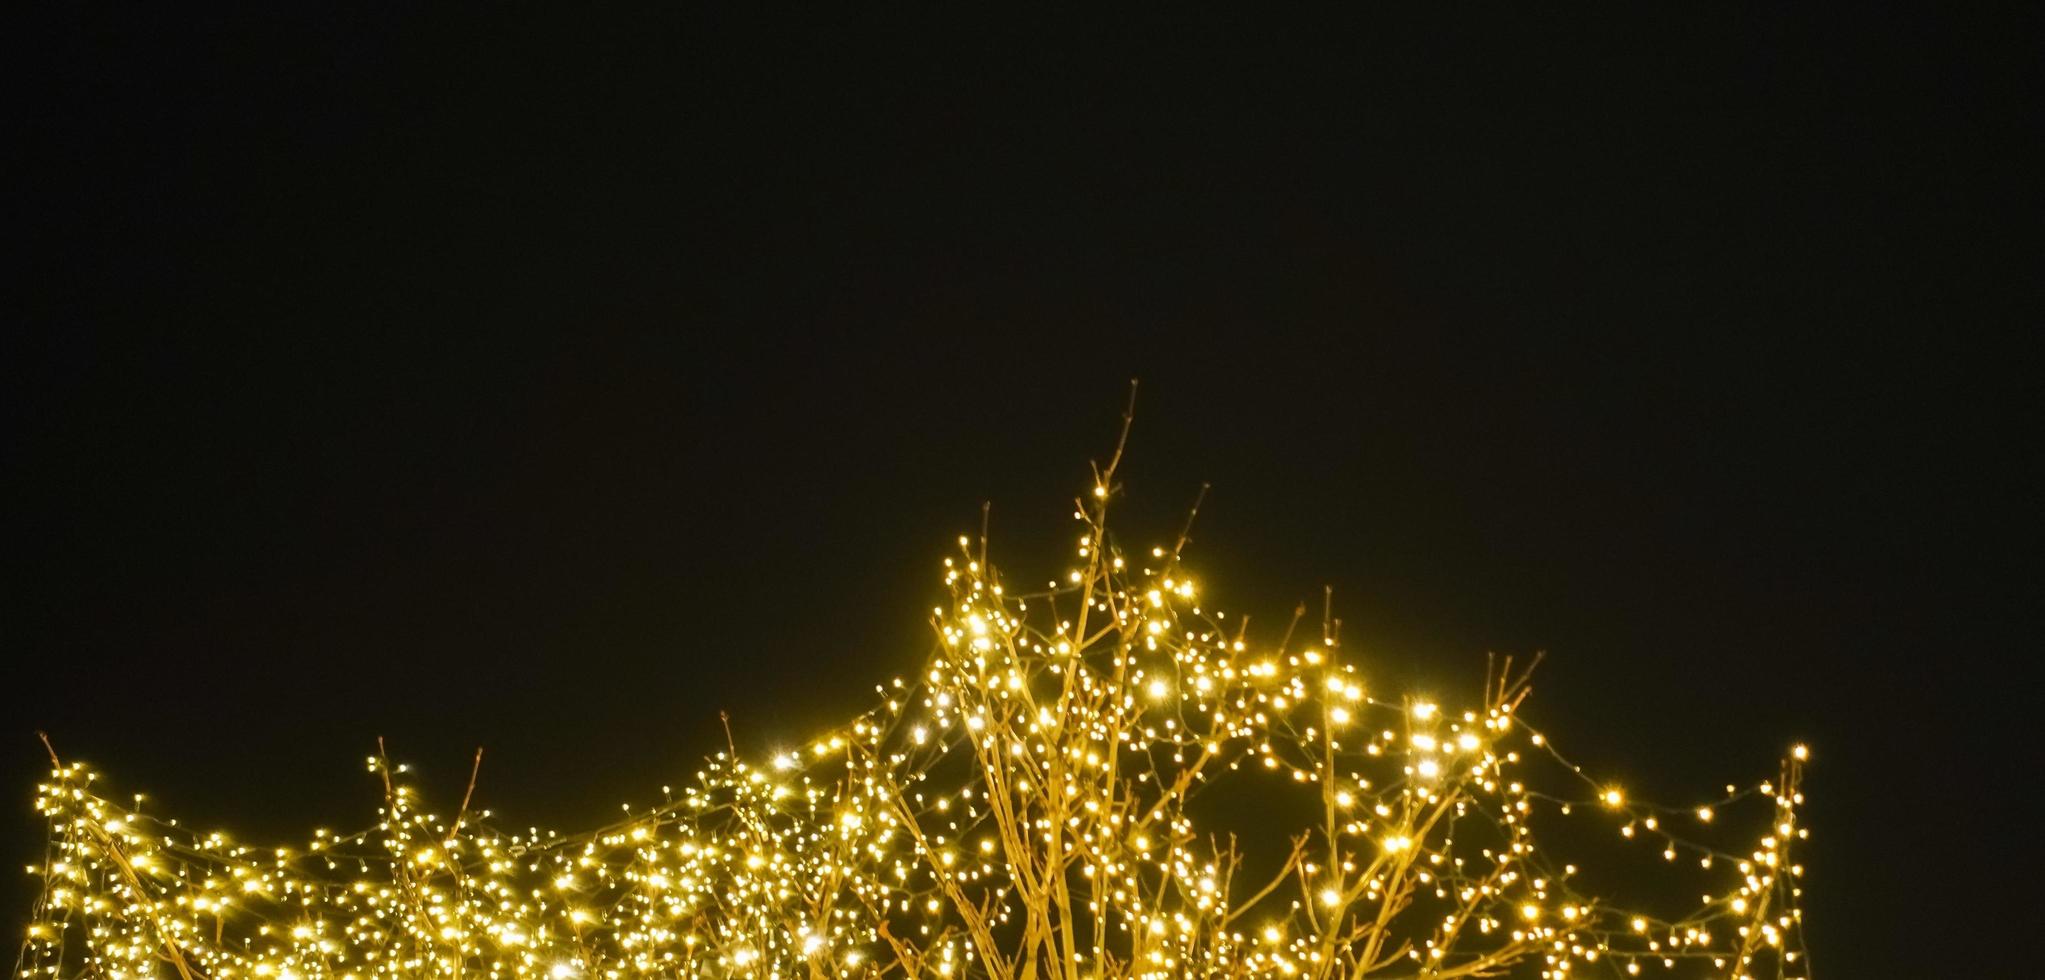 träd med många ljus lampor på en jul marknadsföra med svart himmel i de bakgrund panorama foto